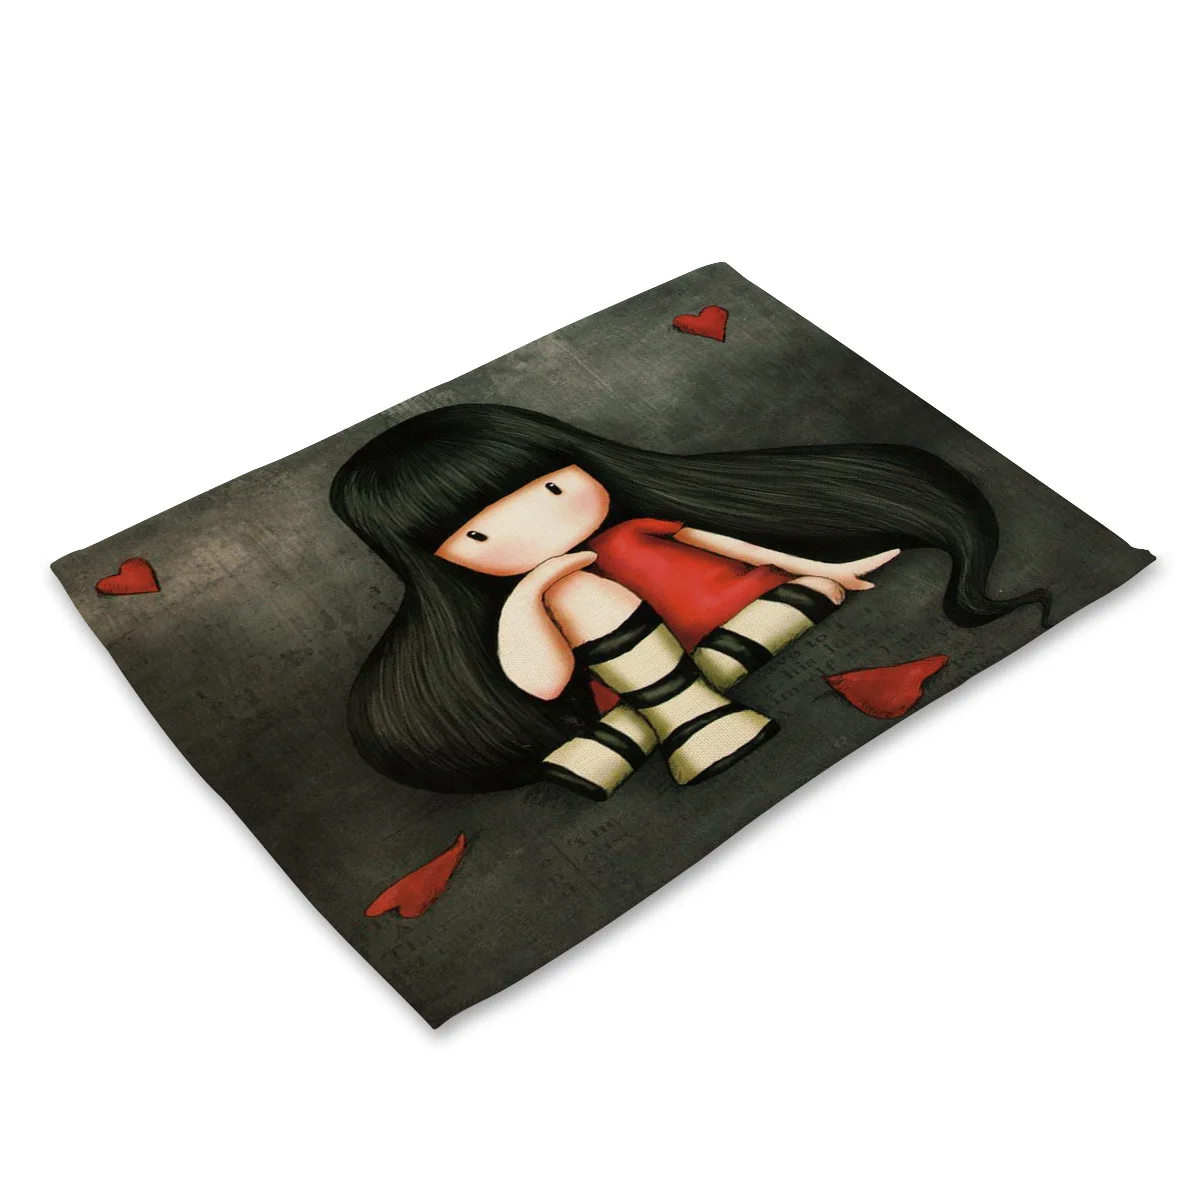 Горячая хлопковая и льняная ткань Изолированная подстилка в стиле вестерна одинокая девушка с длинными волосами кукольная посуда столик-мат салфетки - Цвет: MC0023-1